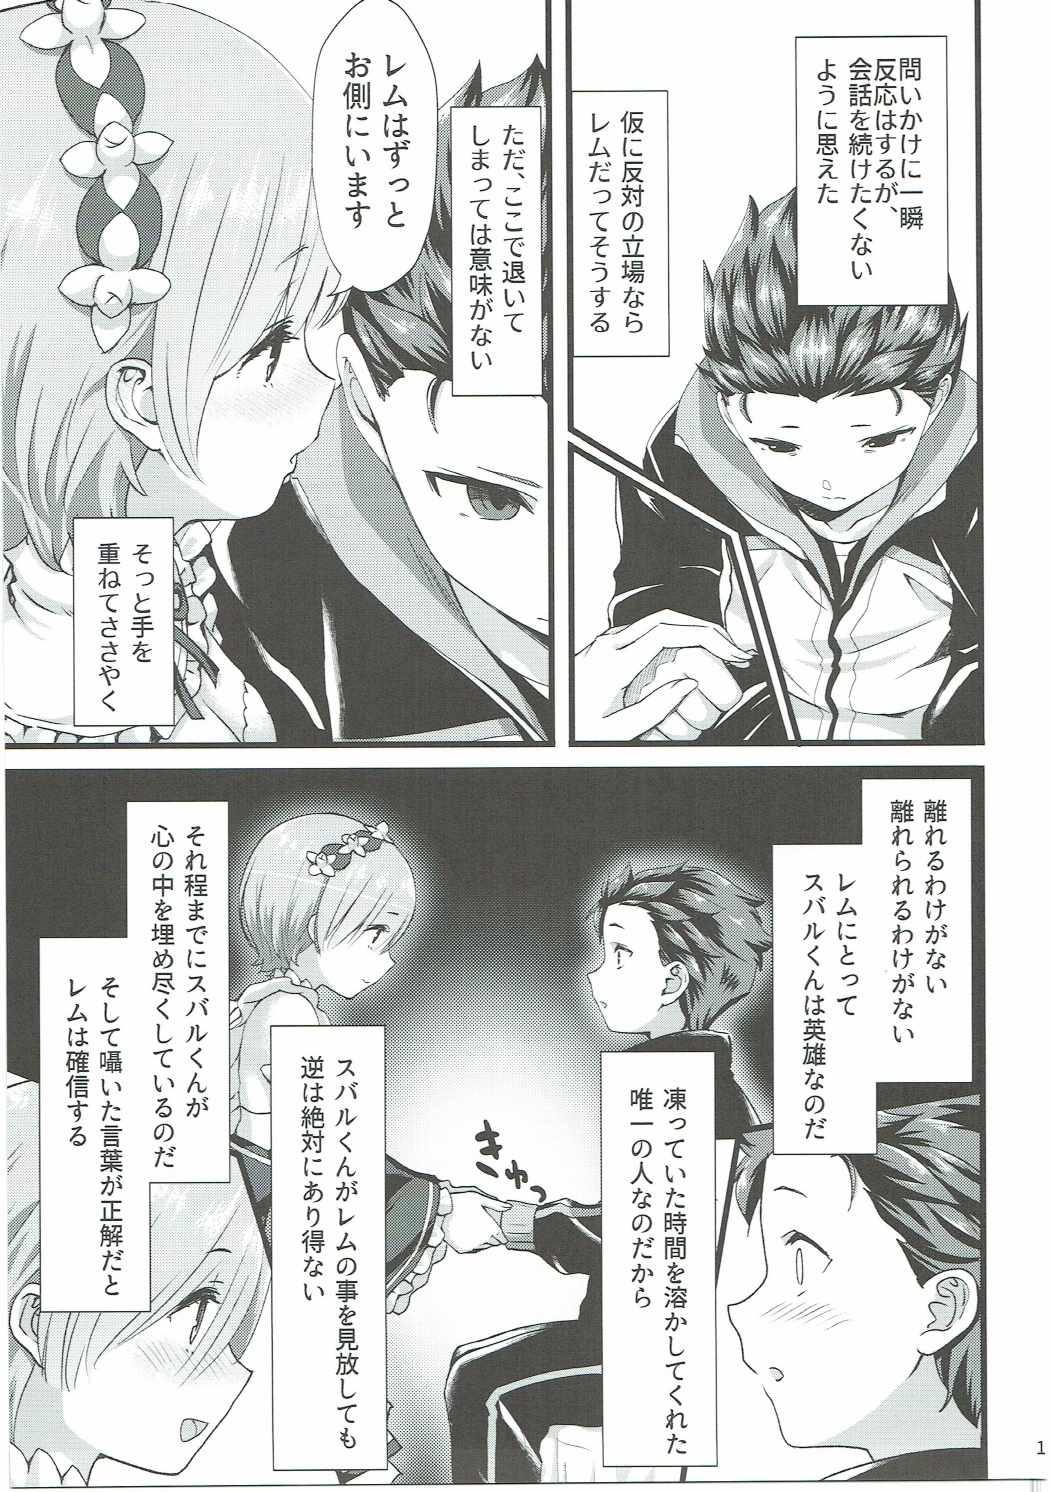 Suck Oni no Shoujo - Re zero kara hajimeru isekai seikatsu Ninfeta - Page 10